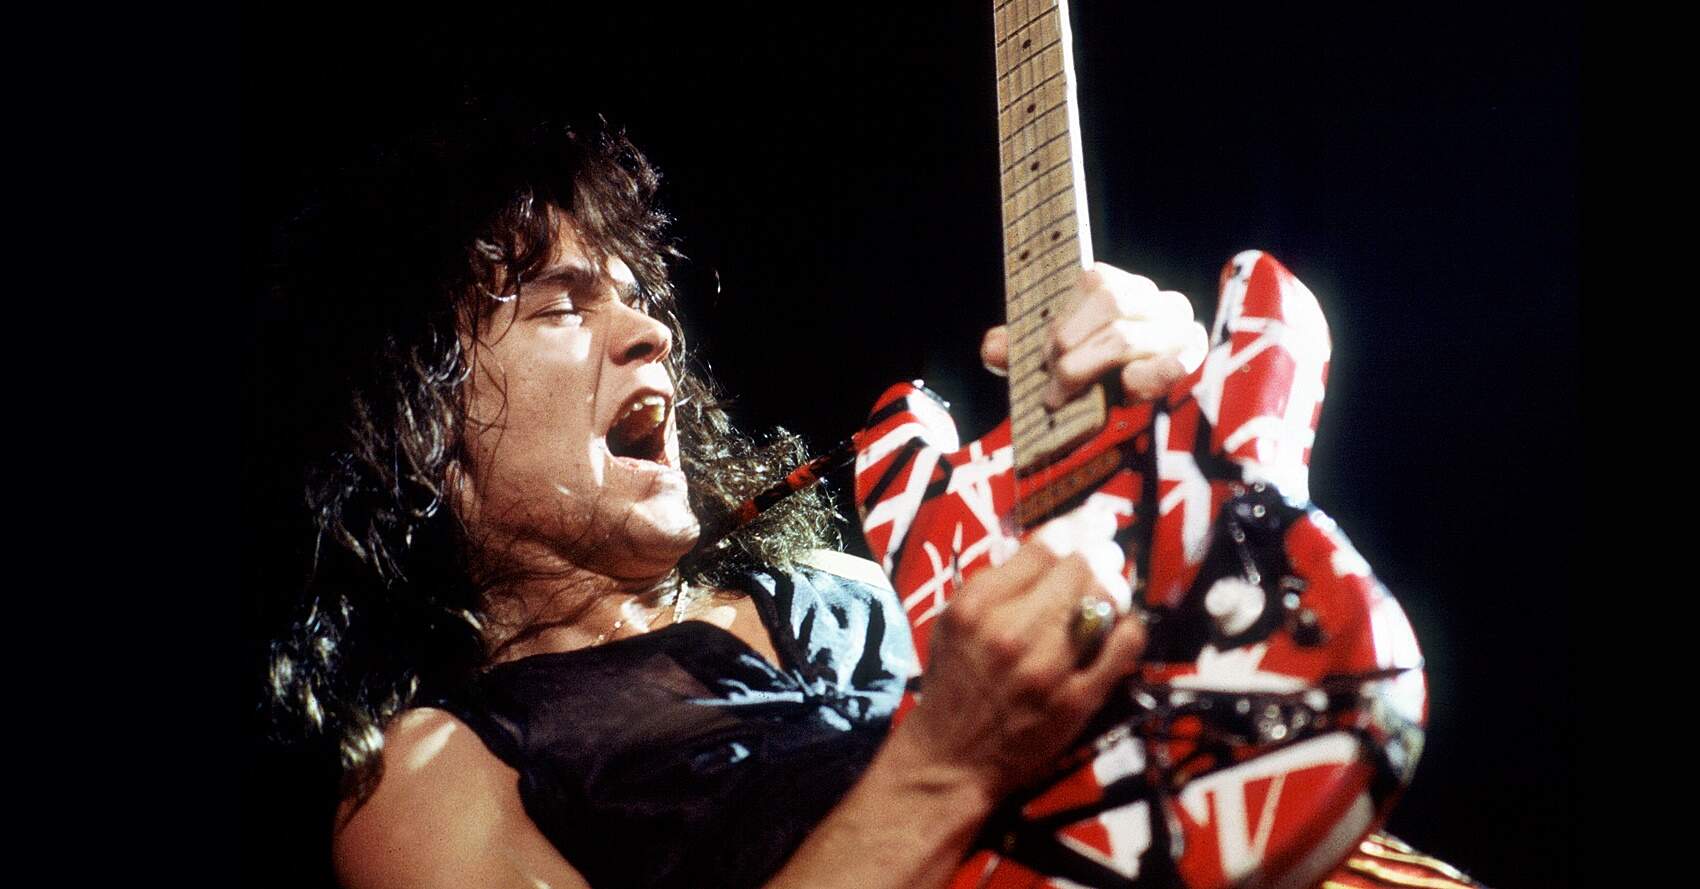 Tom Morello on Eddie Van Halen: 'He was our Generation's Mozart